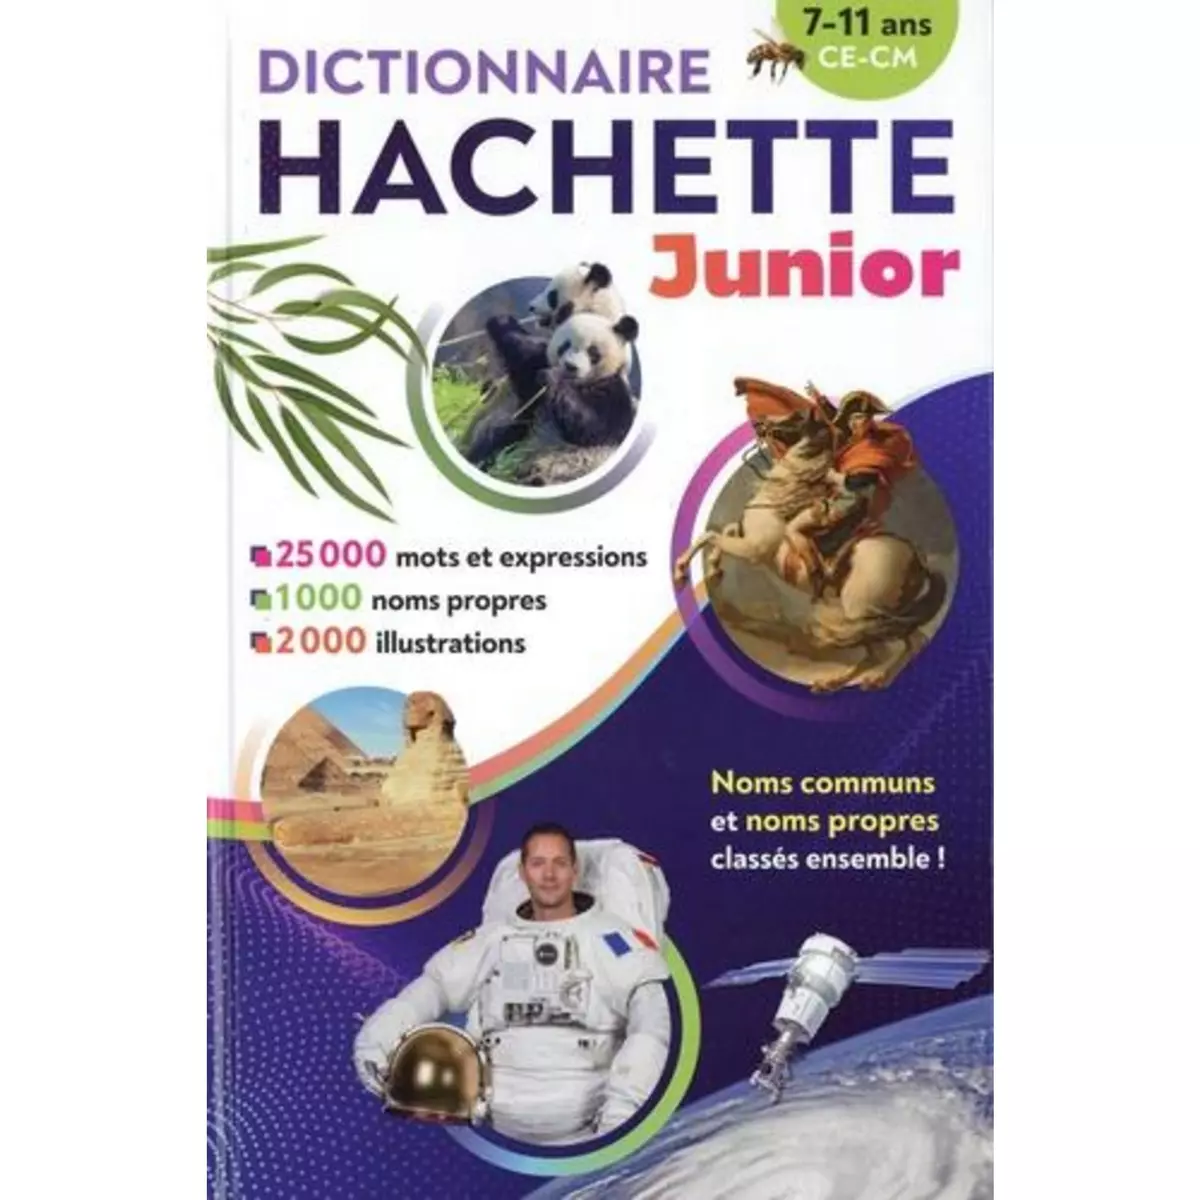  DICTIONNAIRE HACHETTE JUNIOR CE-CM, Hachette Education